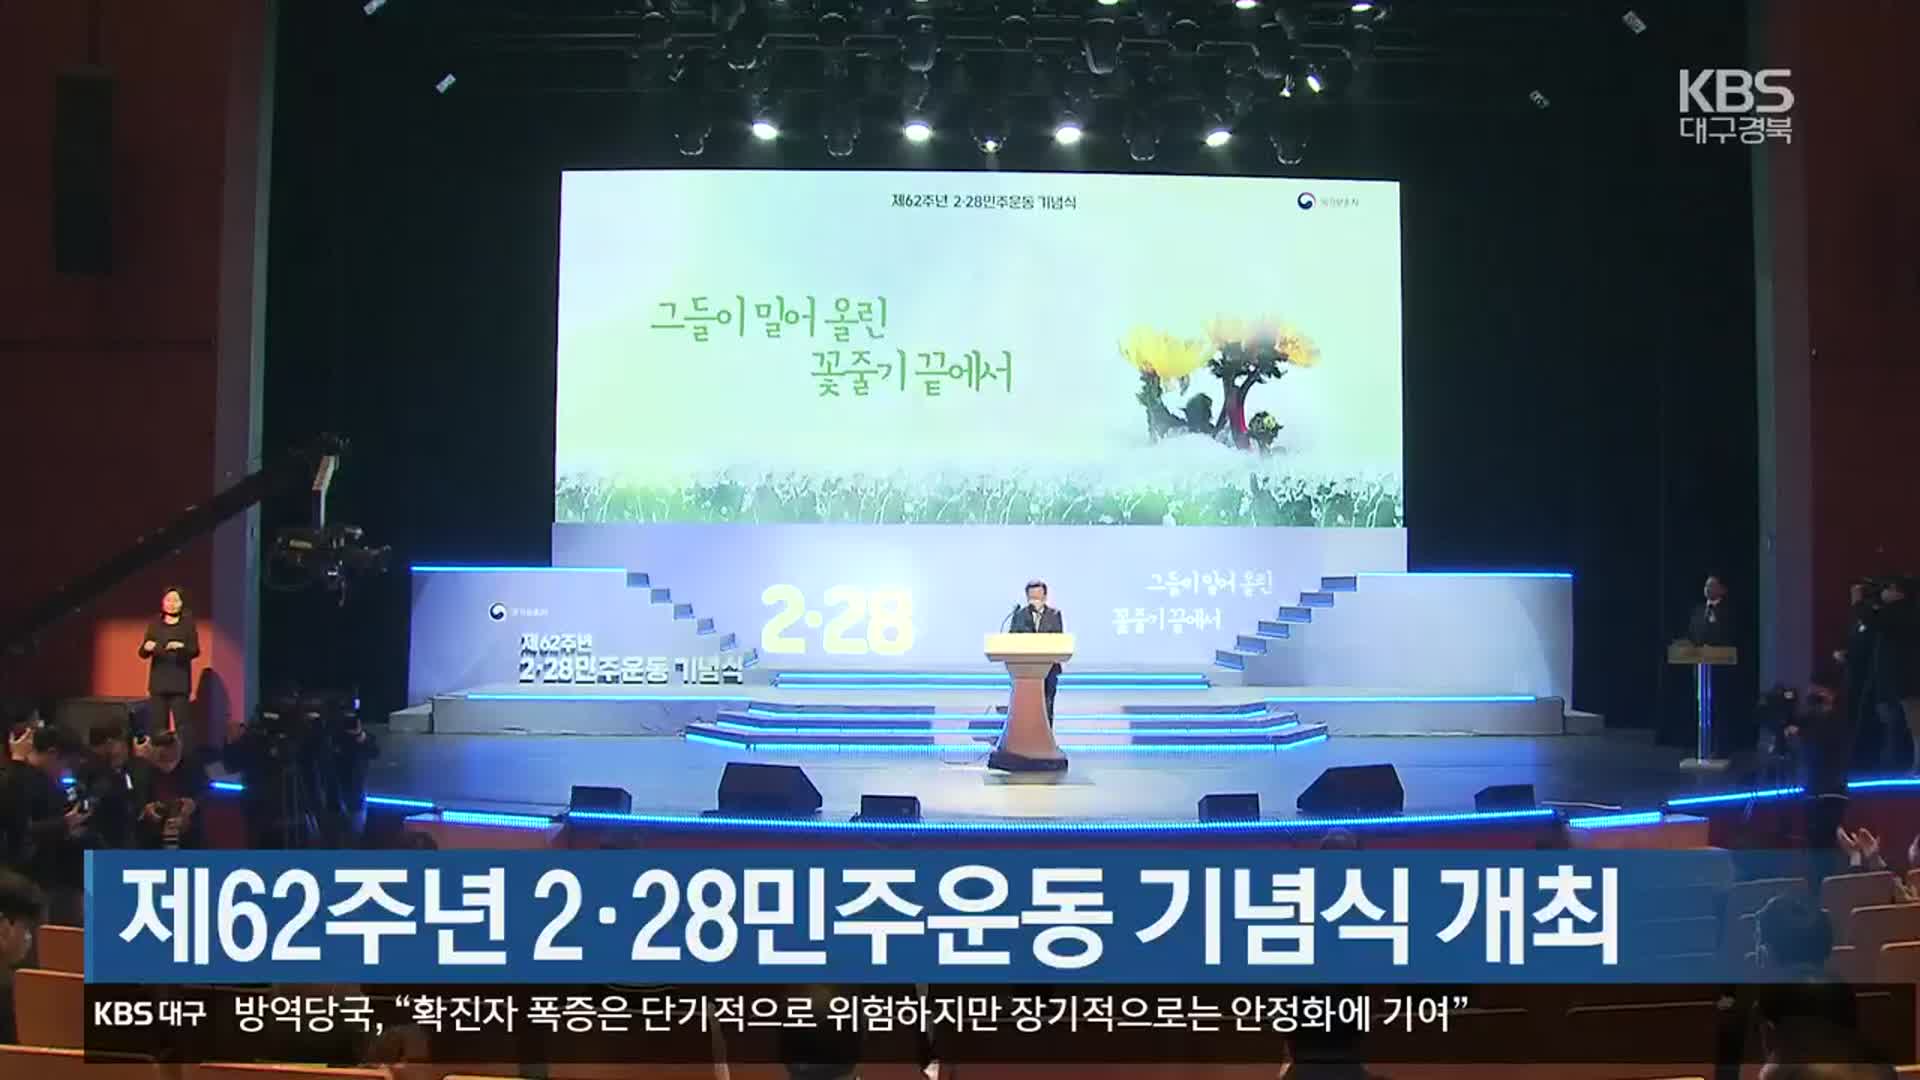 제62주년 2·28민주운동 기념식 개최